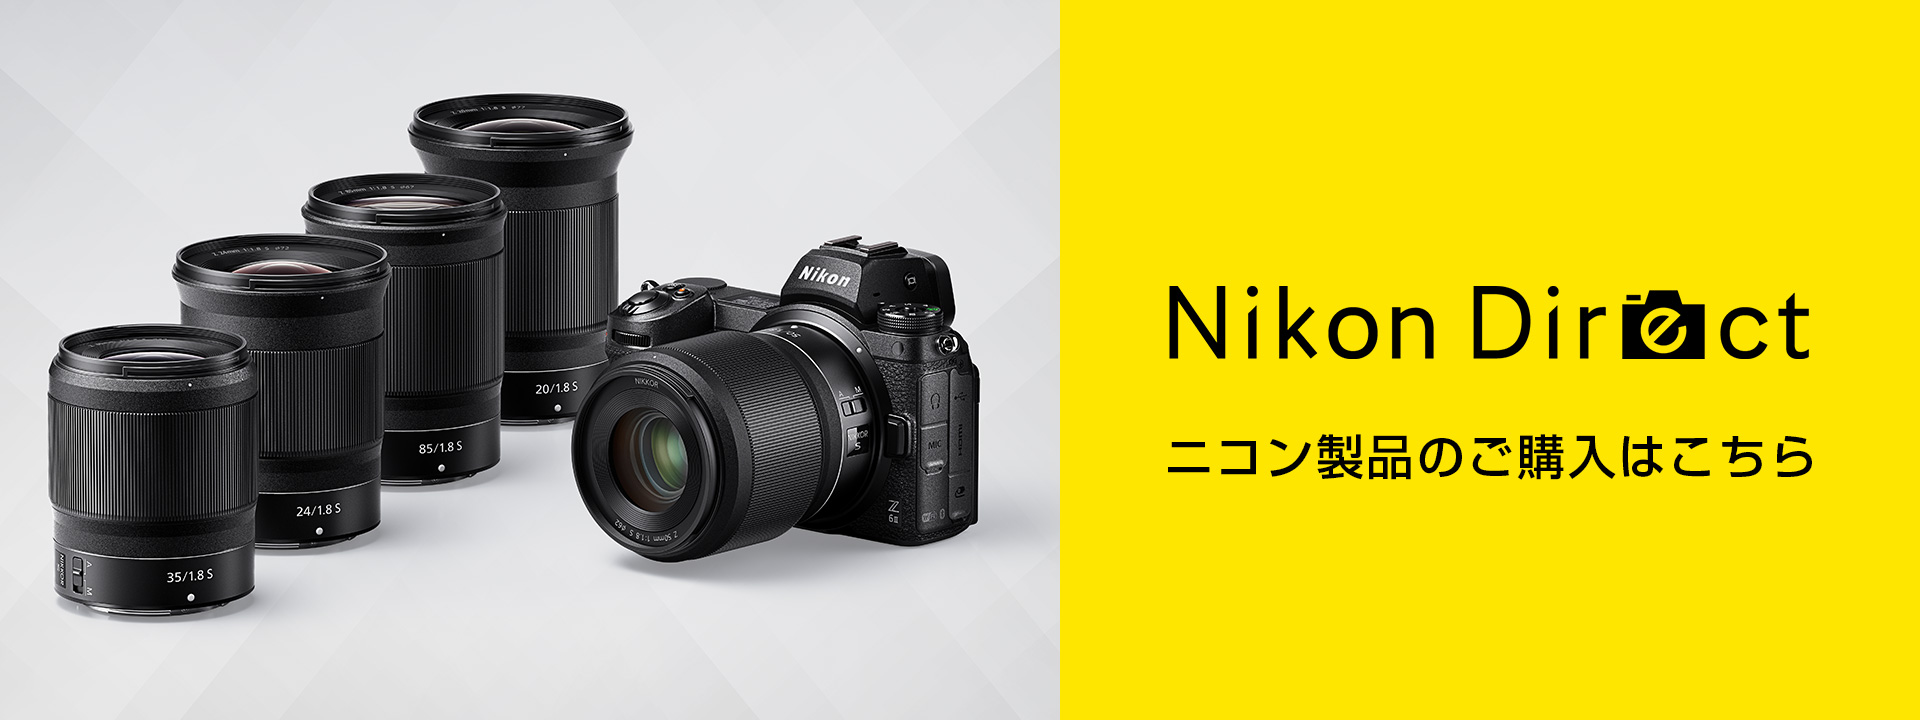 NIKKOR Z DX 24mm f/1.7 - 概要 | NIKKORレンズ | ニコンイメージング